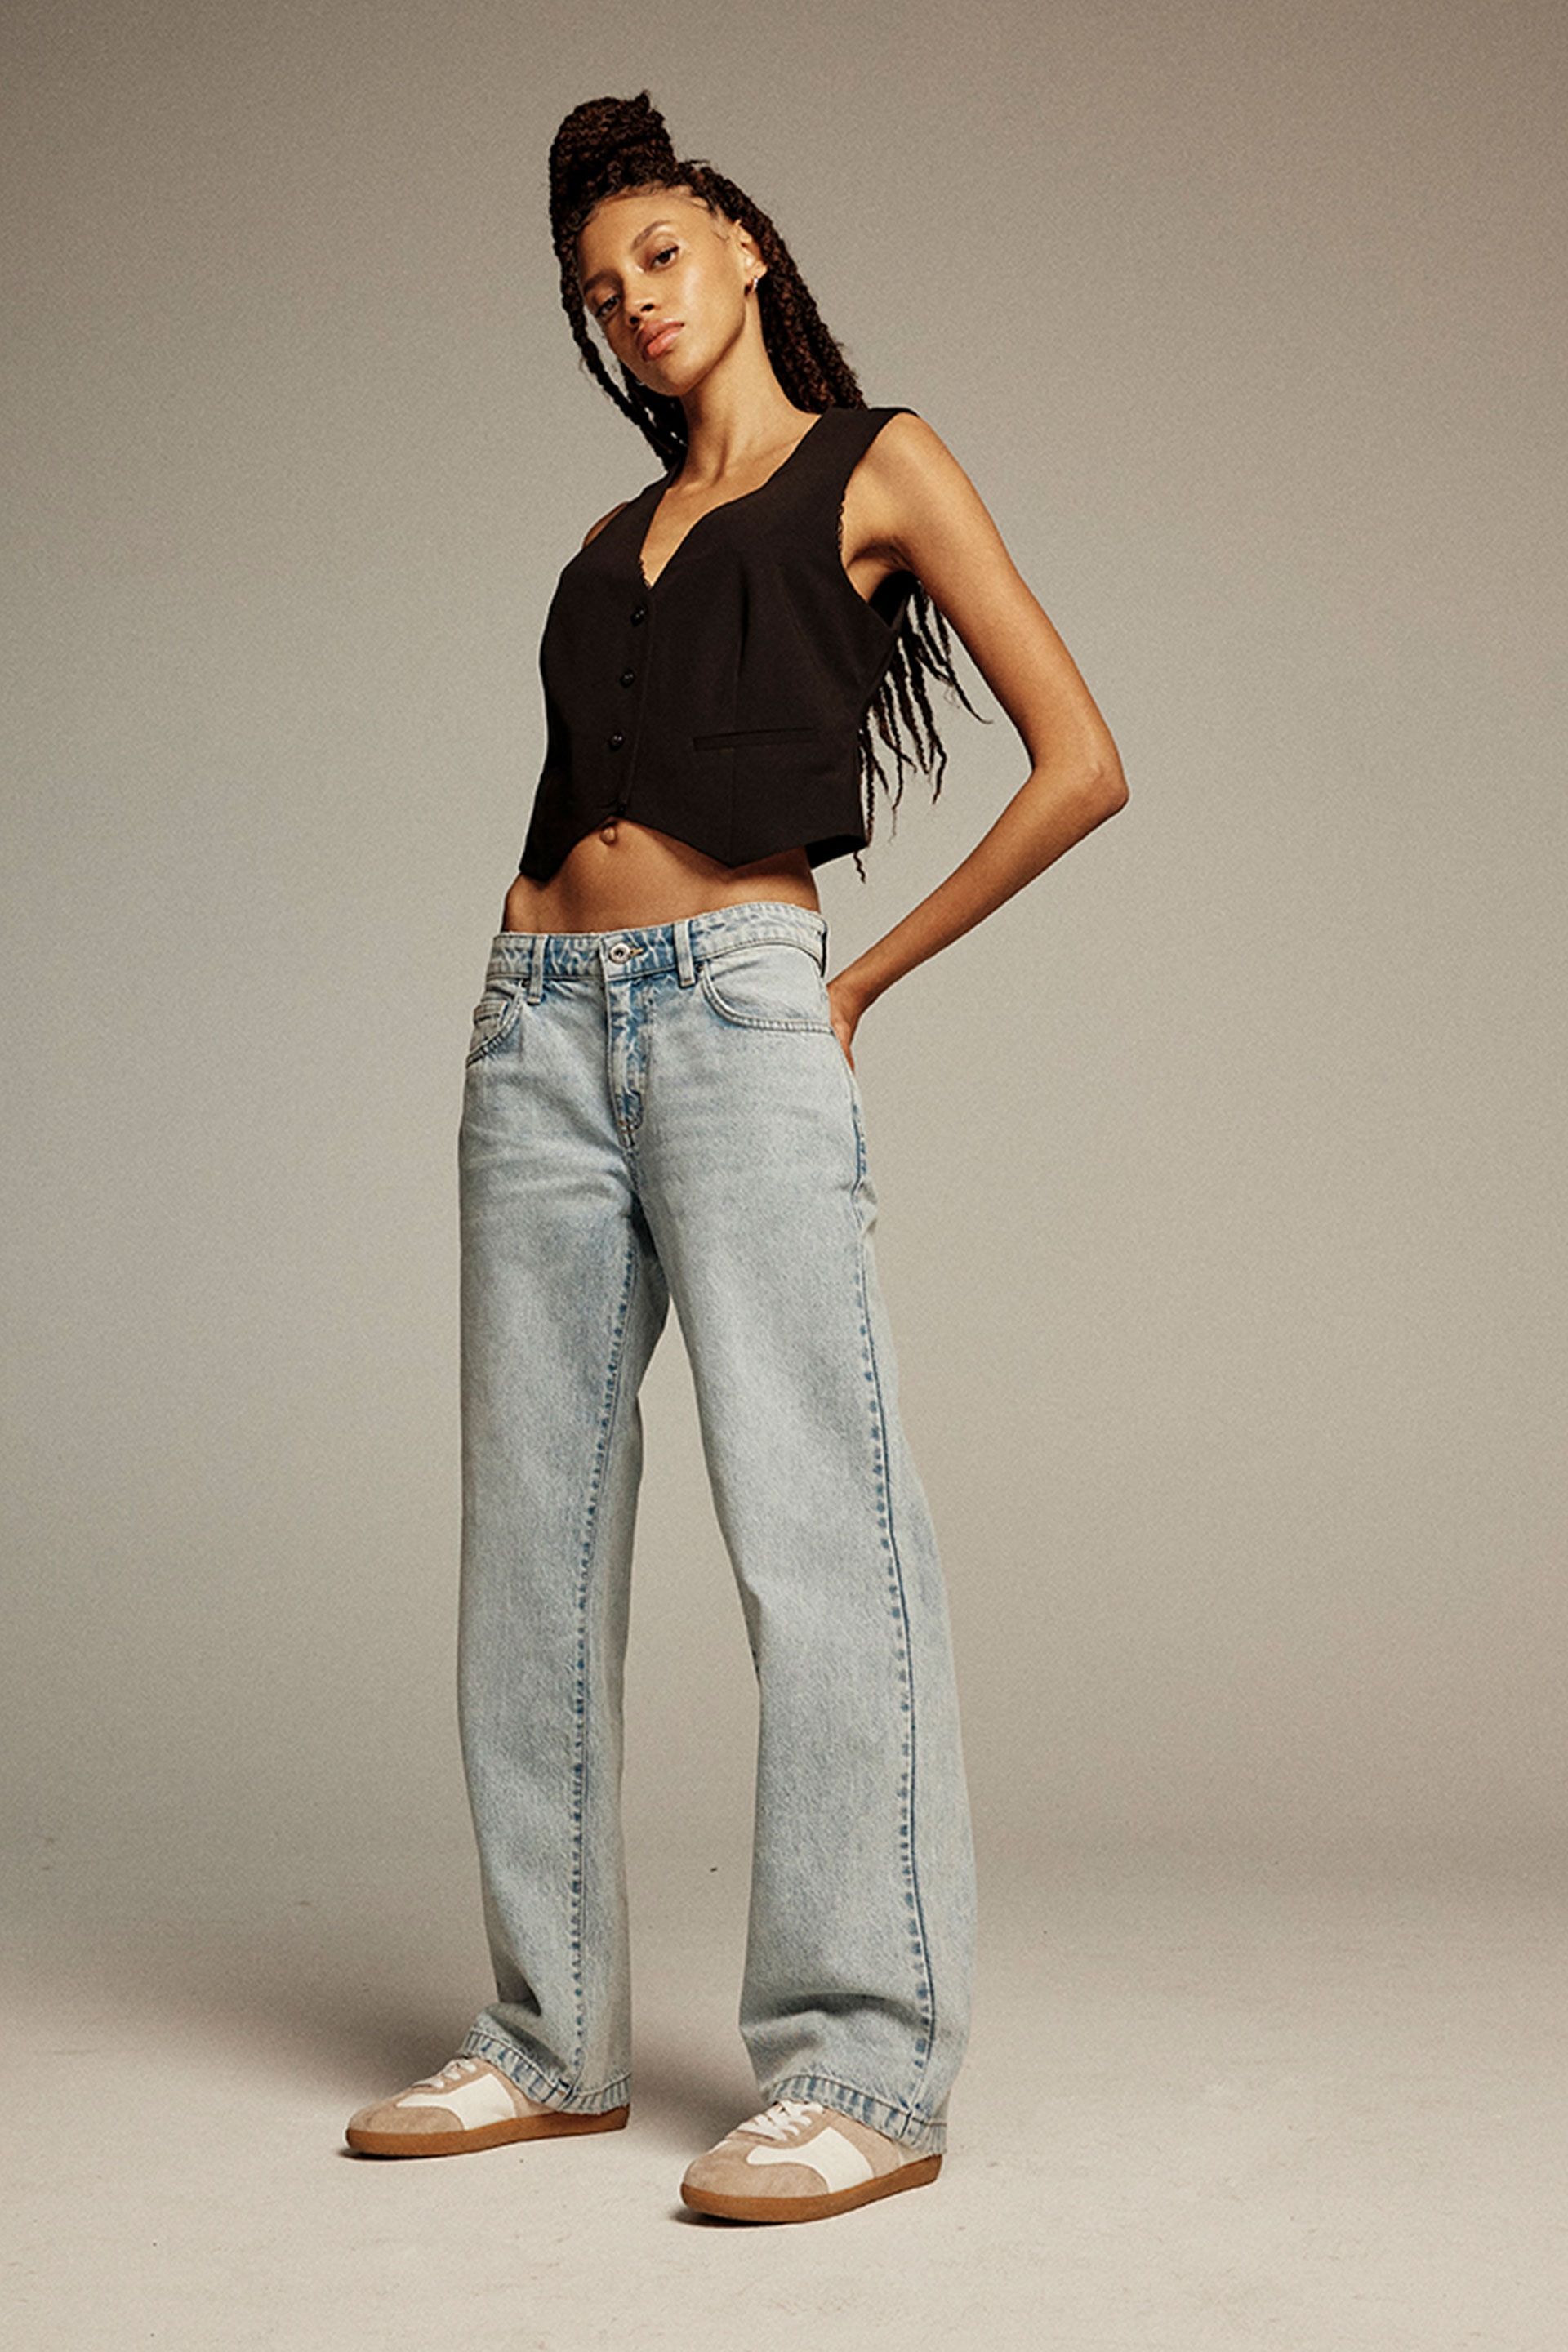 Target 2020 PAPER BAG PANTS | Paperbag pants, Fashion, Women